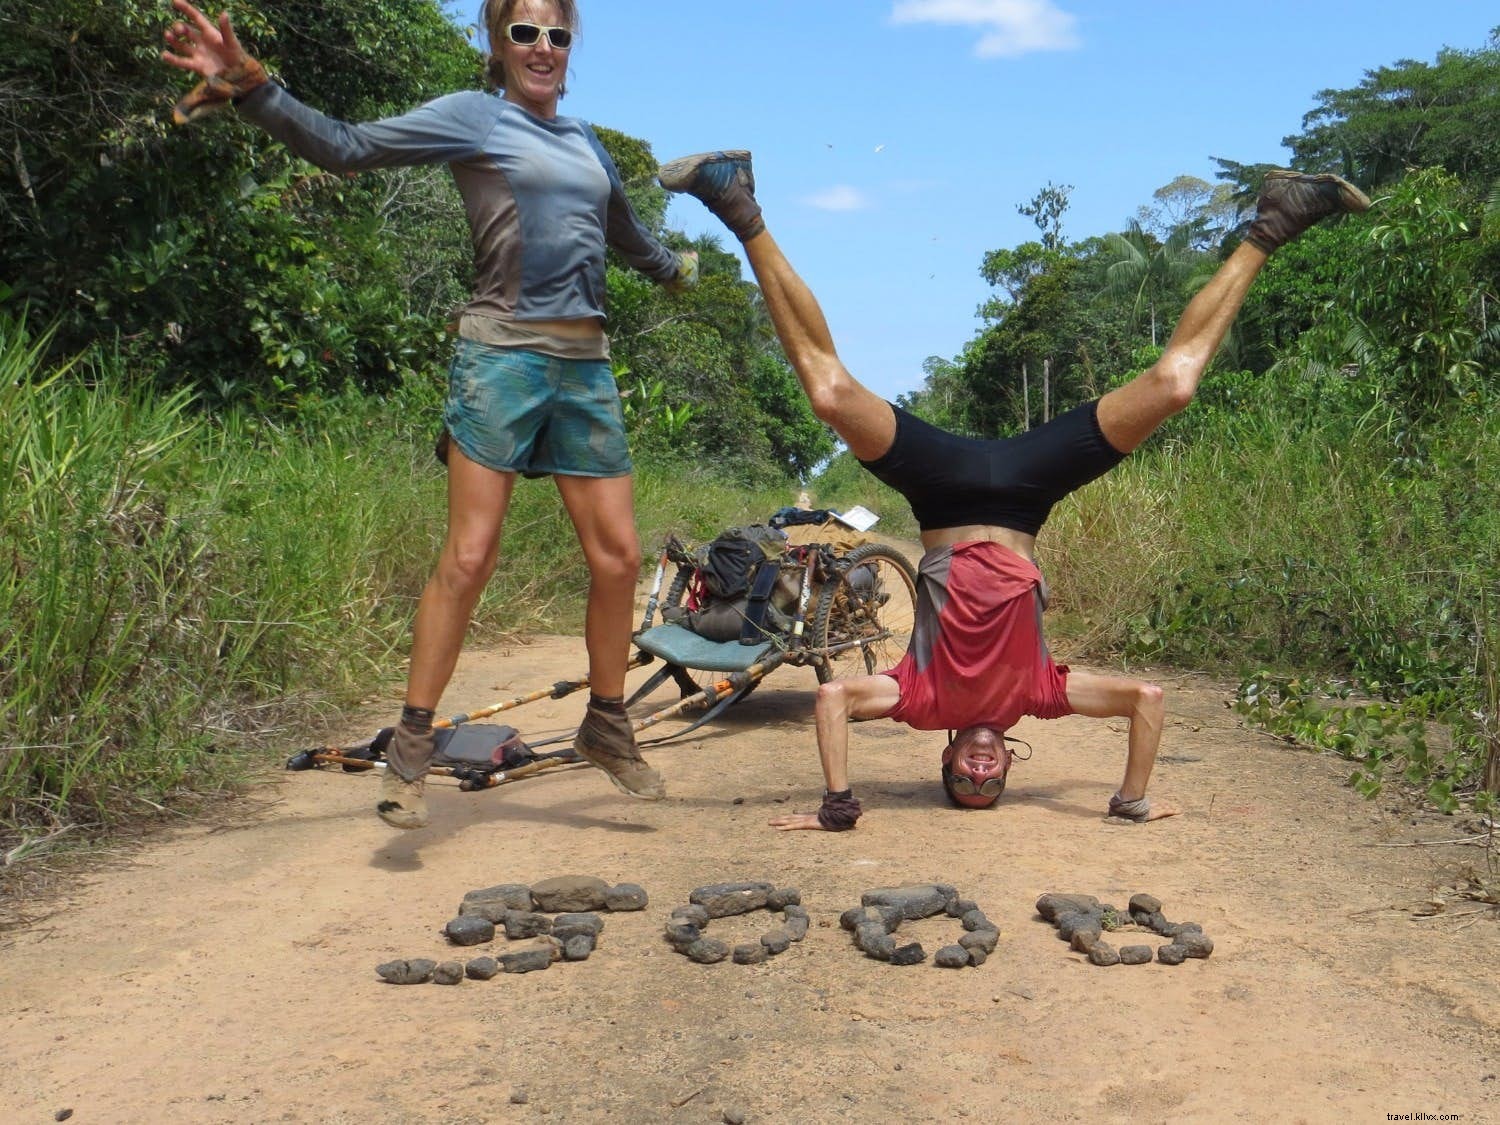 「最も美しくシンプルな存在」：あるカップルが南アメリカを5000マイル走った経験を共有しています 